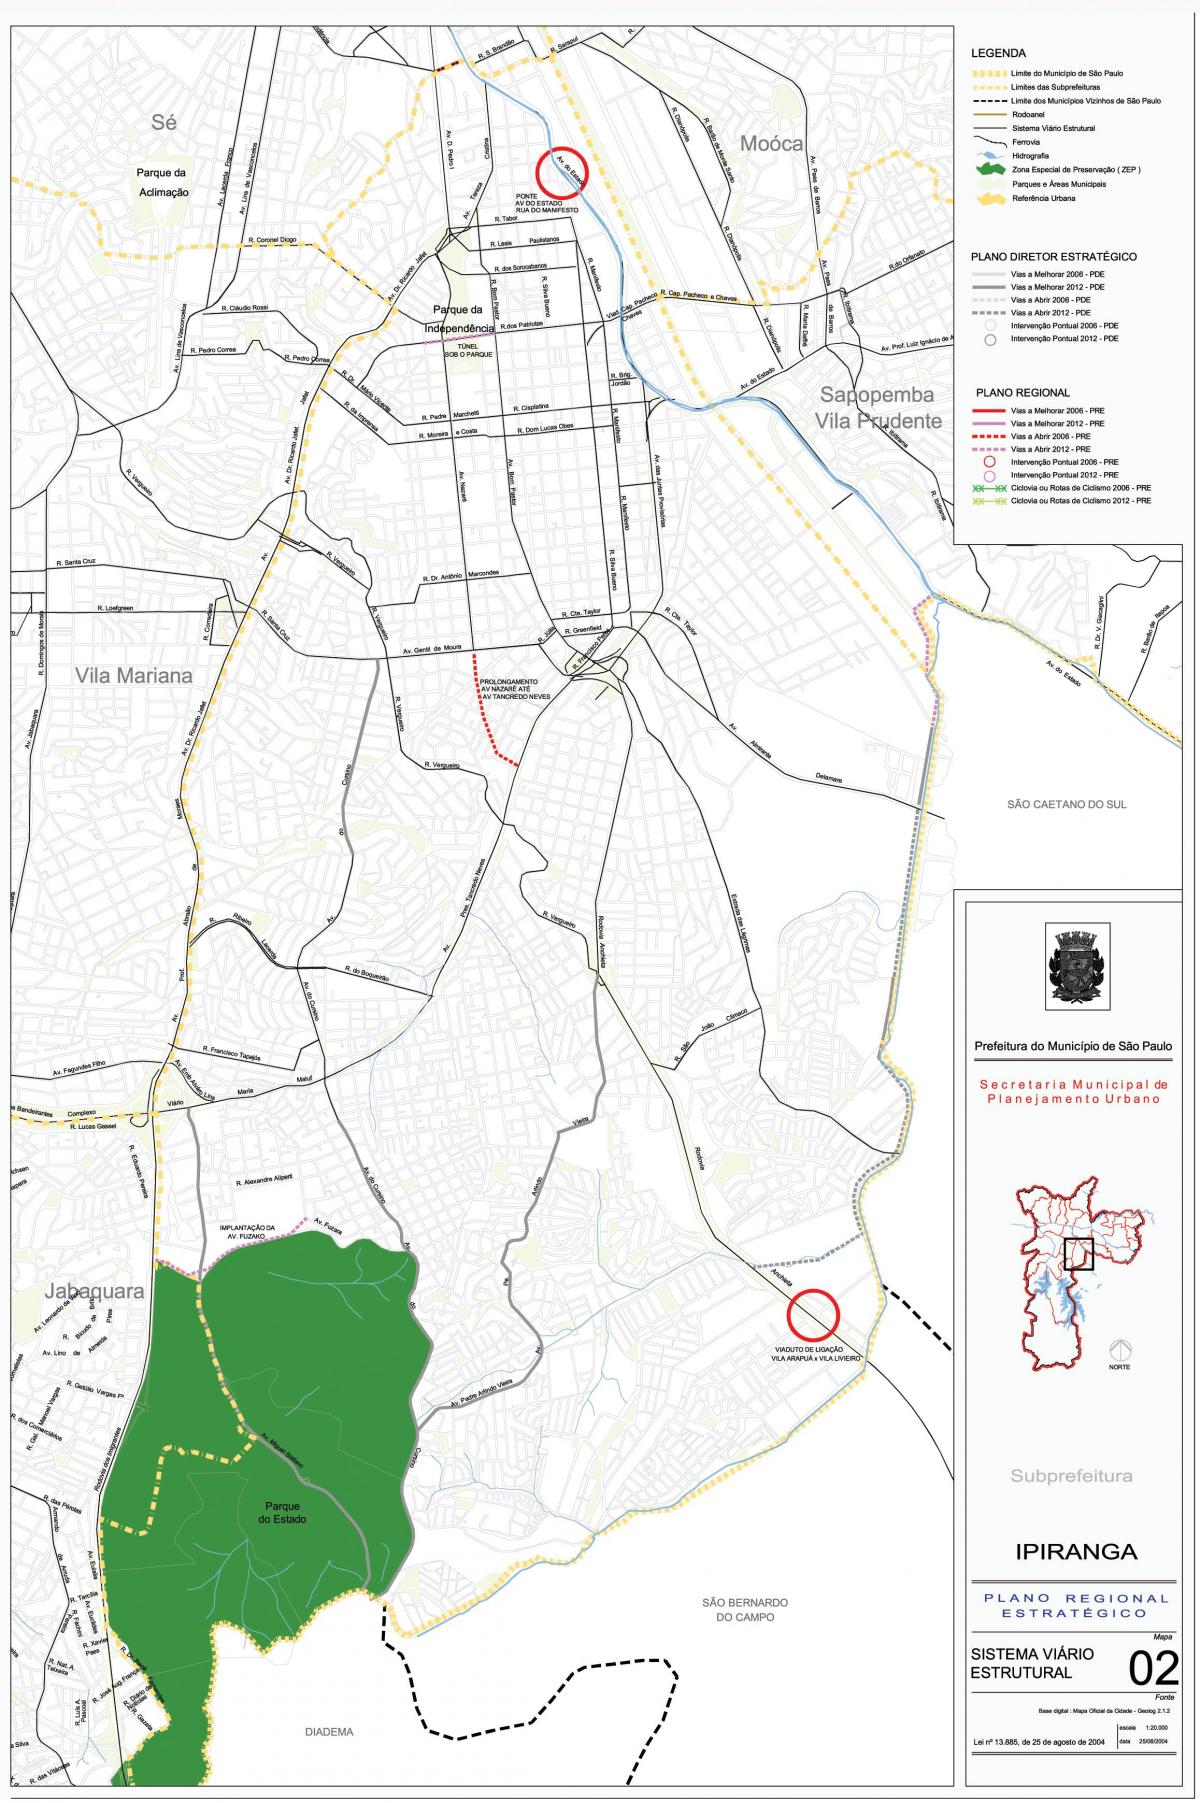 Kart over Ipiranga São Paulo - Veier